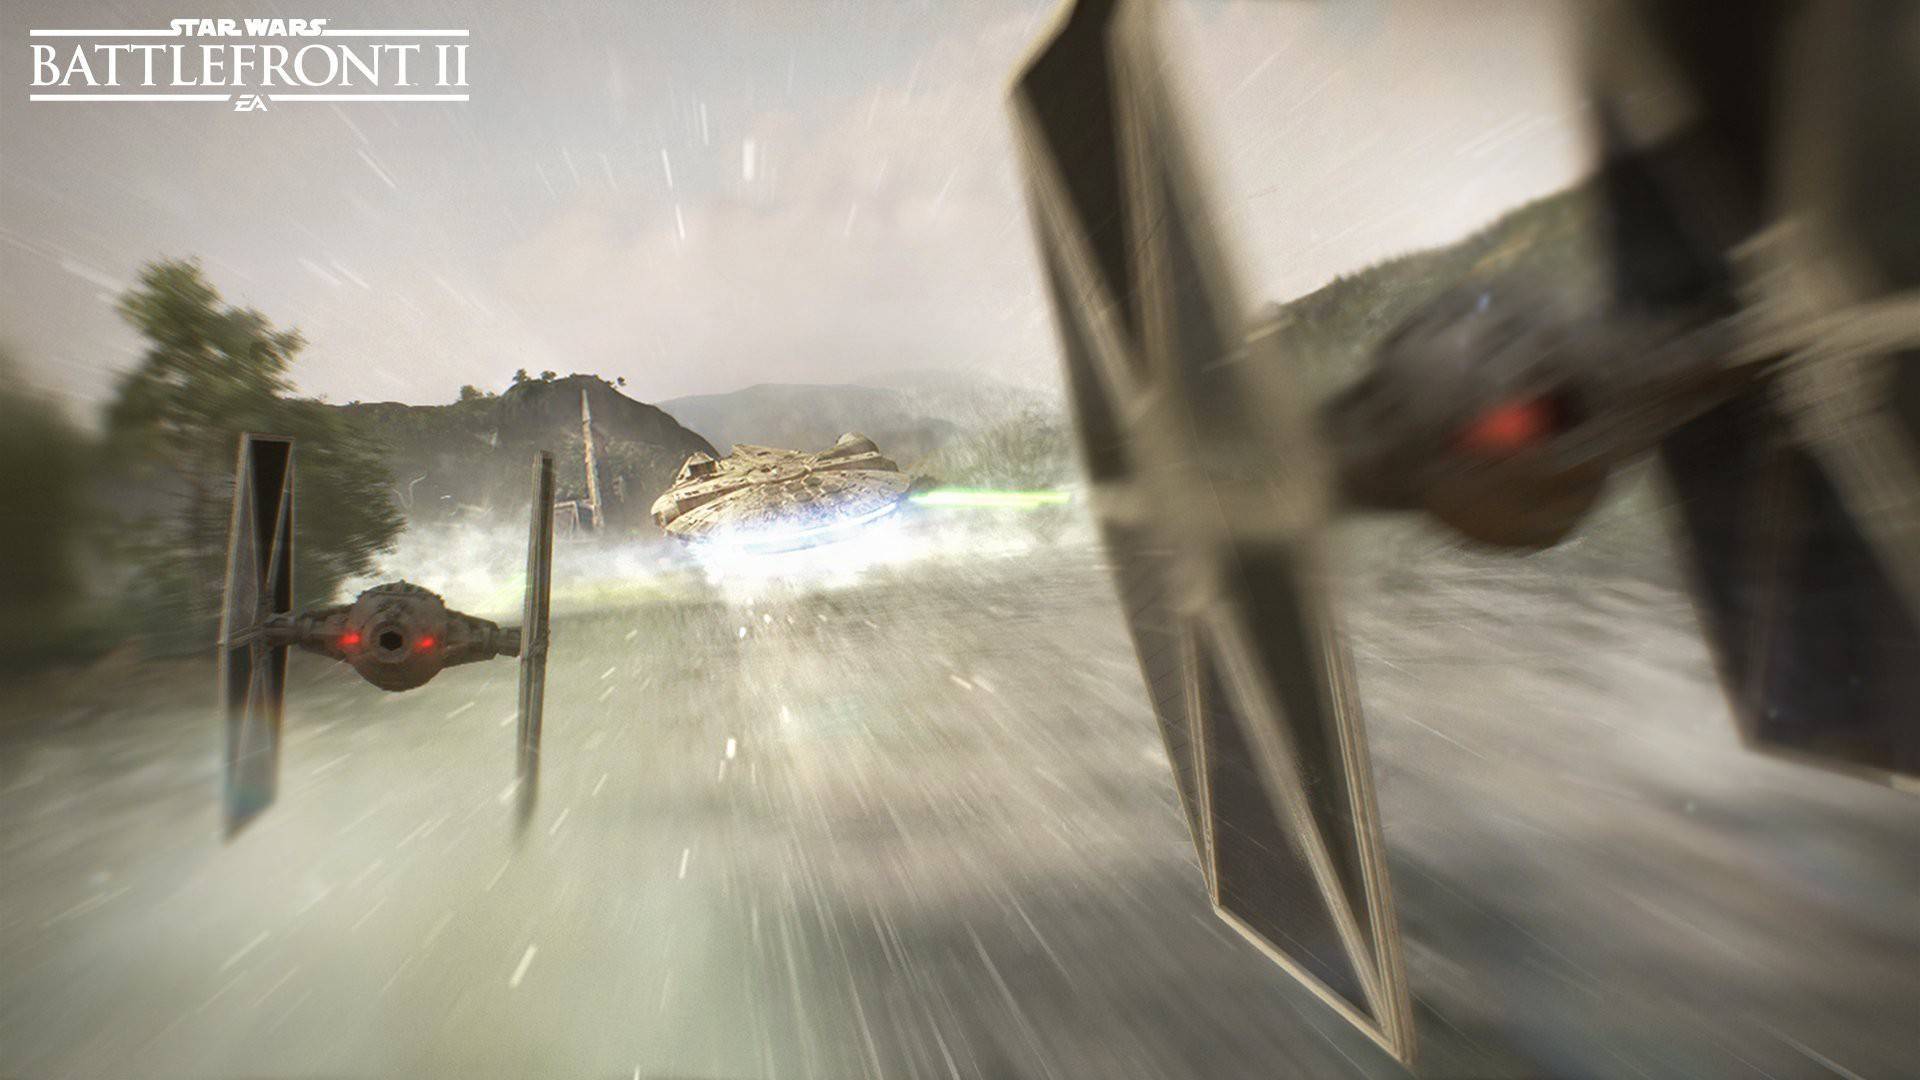 Star Wars: Battlefront II (celebration Edition) (eng/fr/es/pt) Origin  Digital